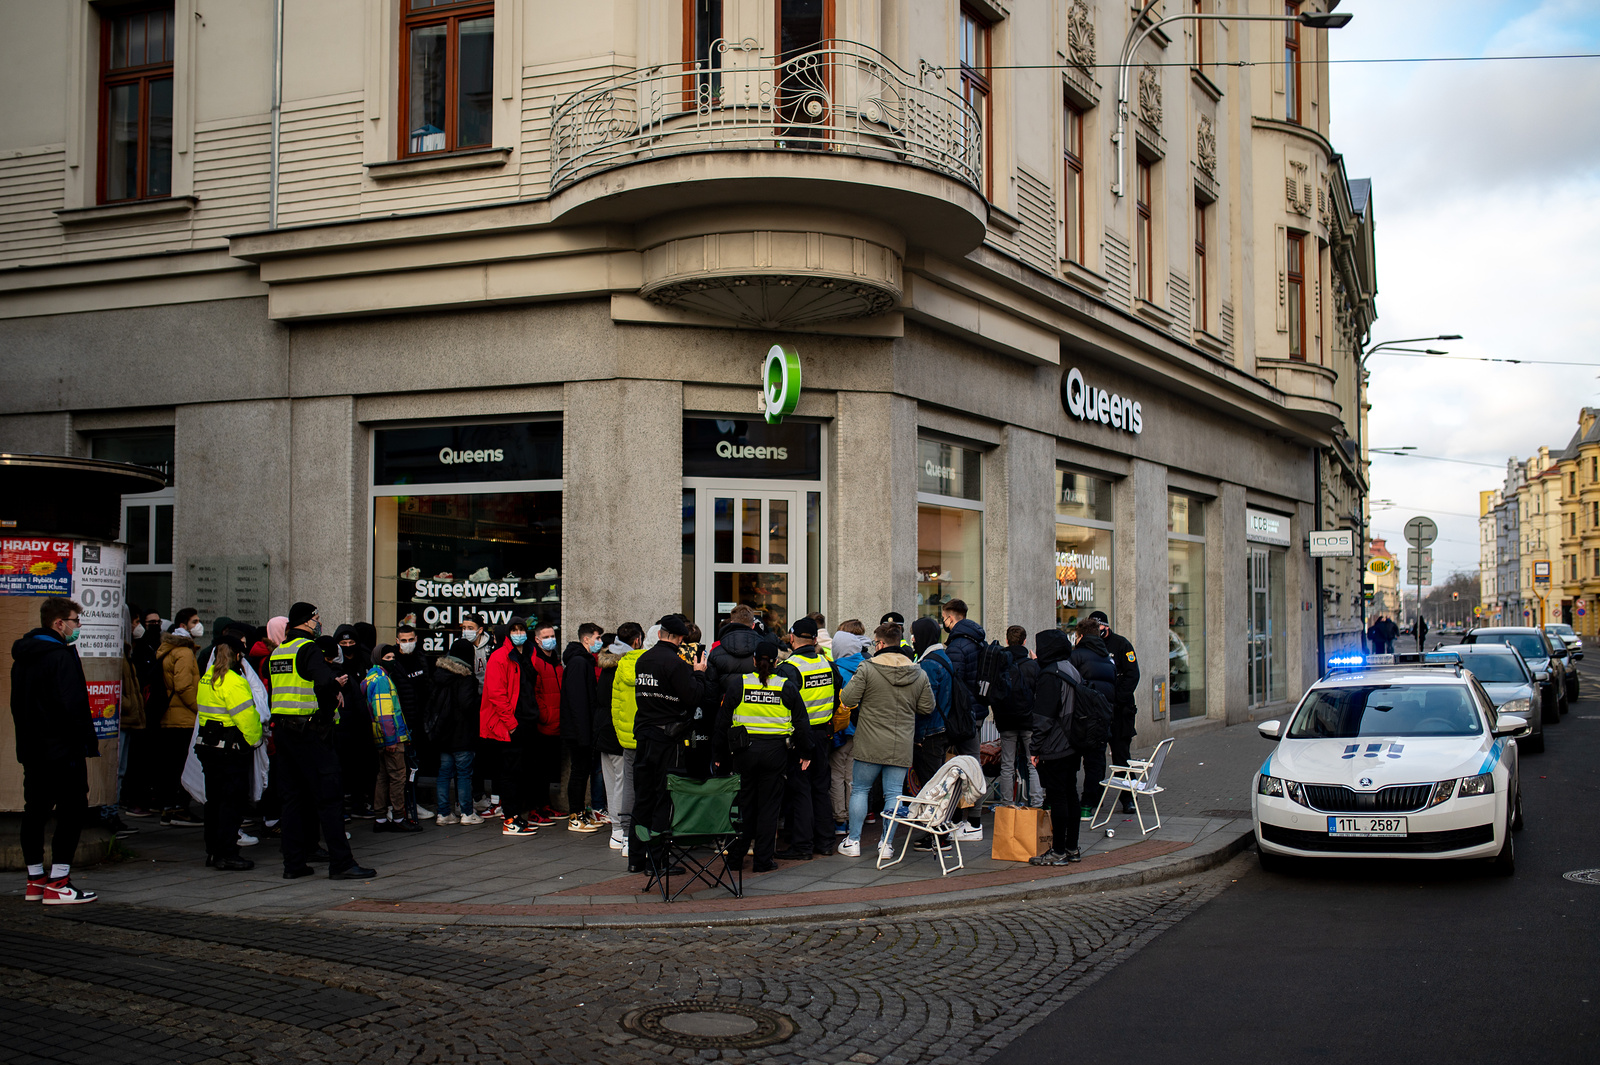 Šílenství v Ostravě kvůli limitované edici. Lidé čekali na boty přes noc -  Karvinský a havířovský deník